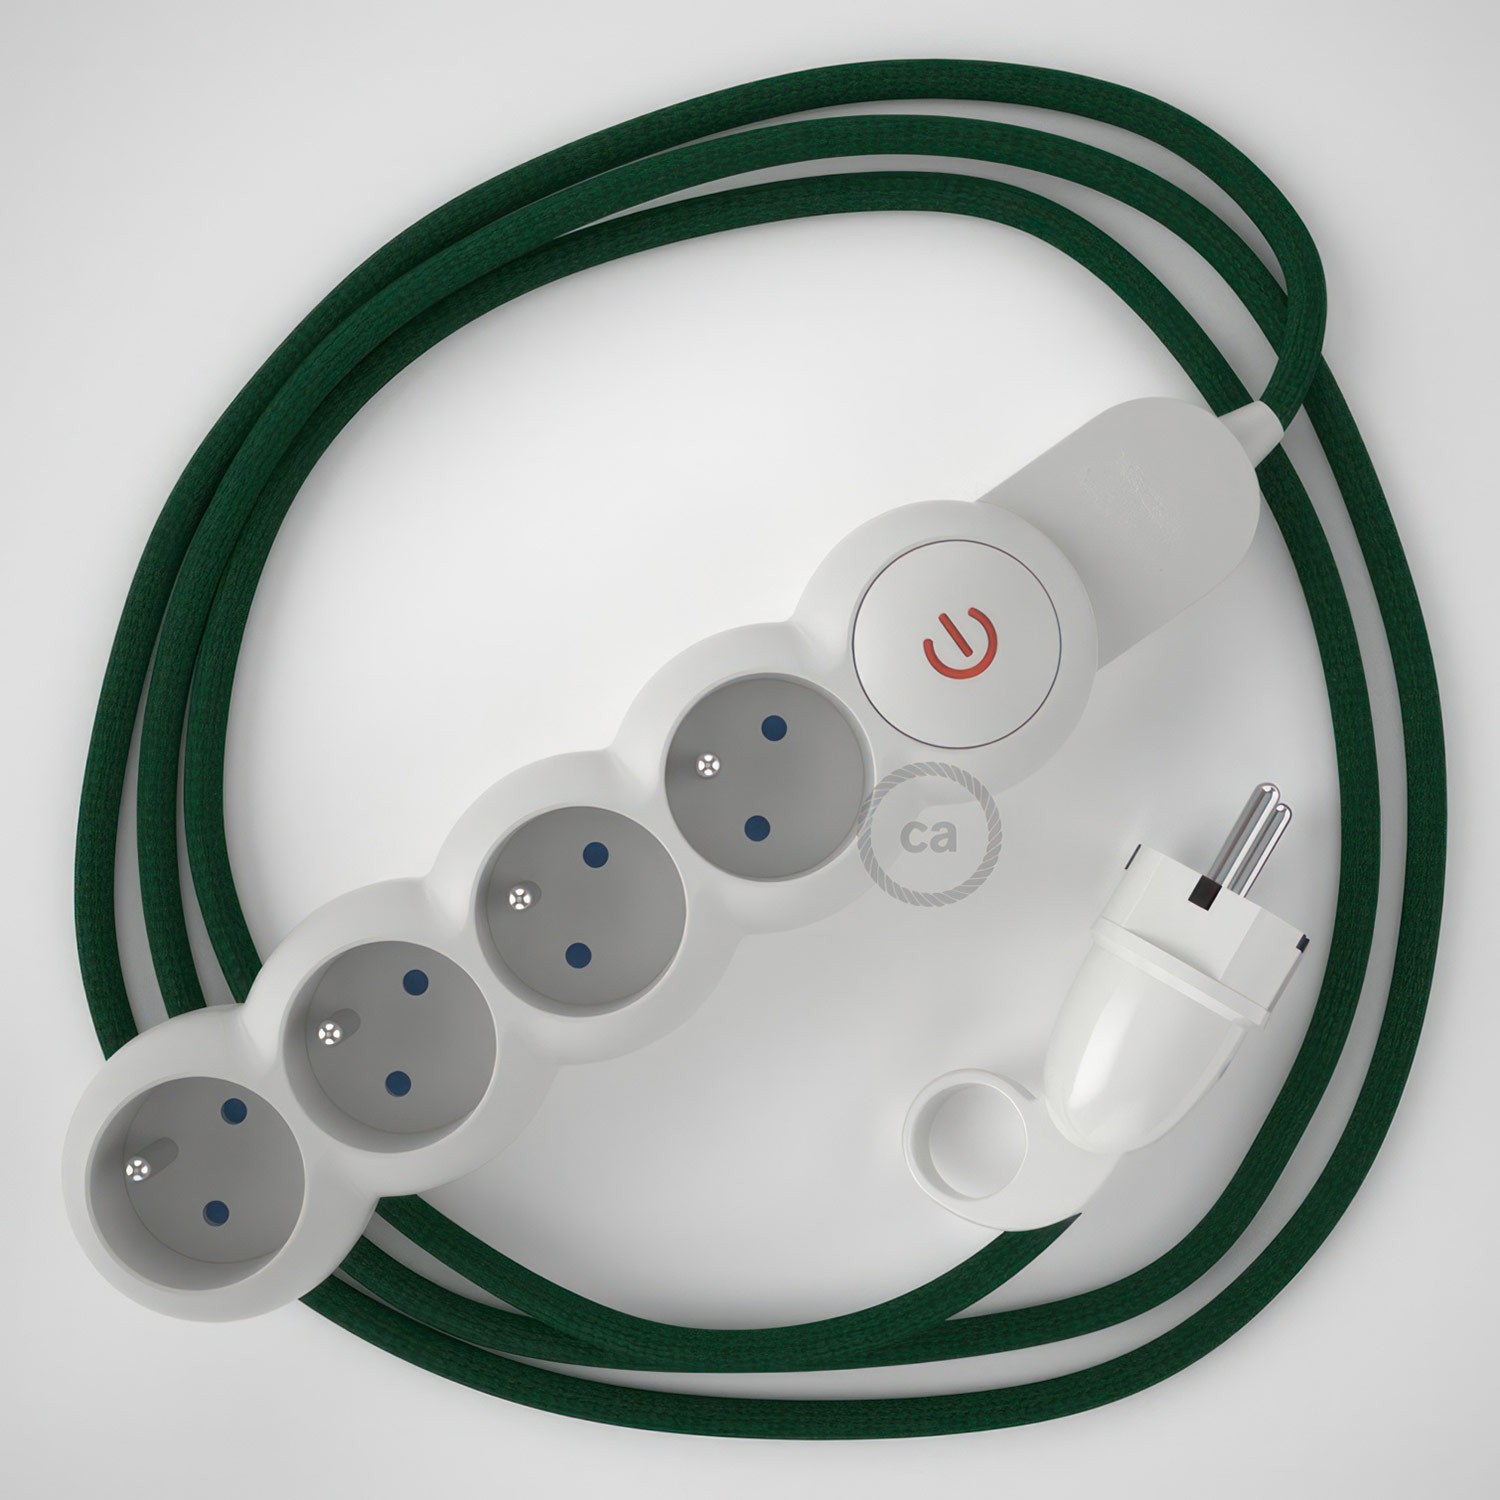 Multienchufe francés con cable en tejido efecto seda Verde Oscuro RM21 y clavija Schuko con anillo comfort